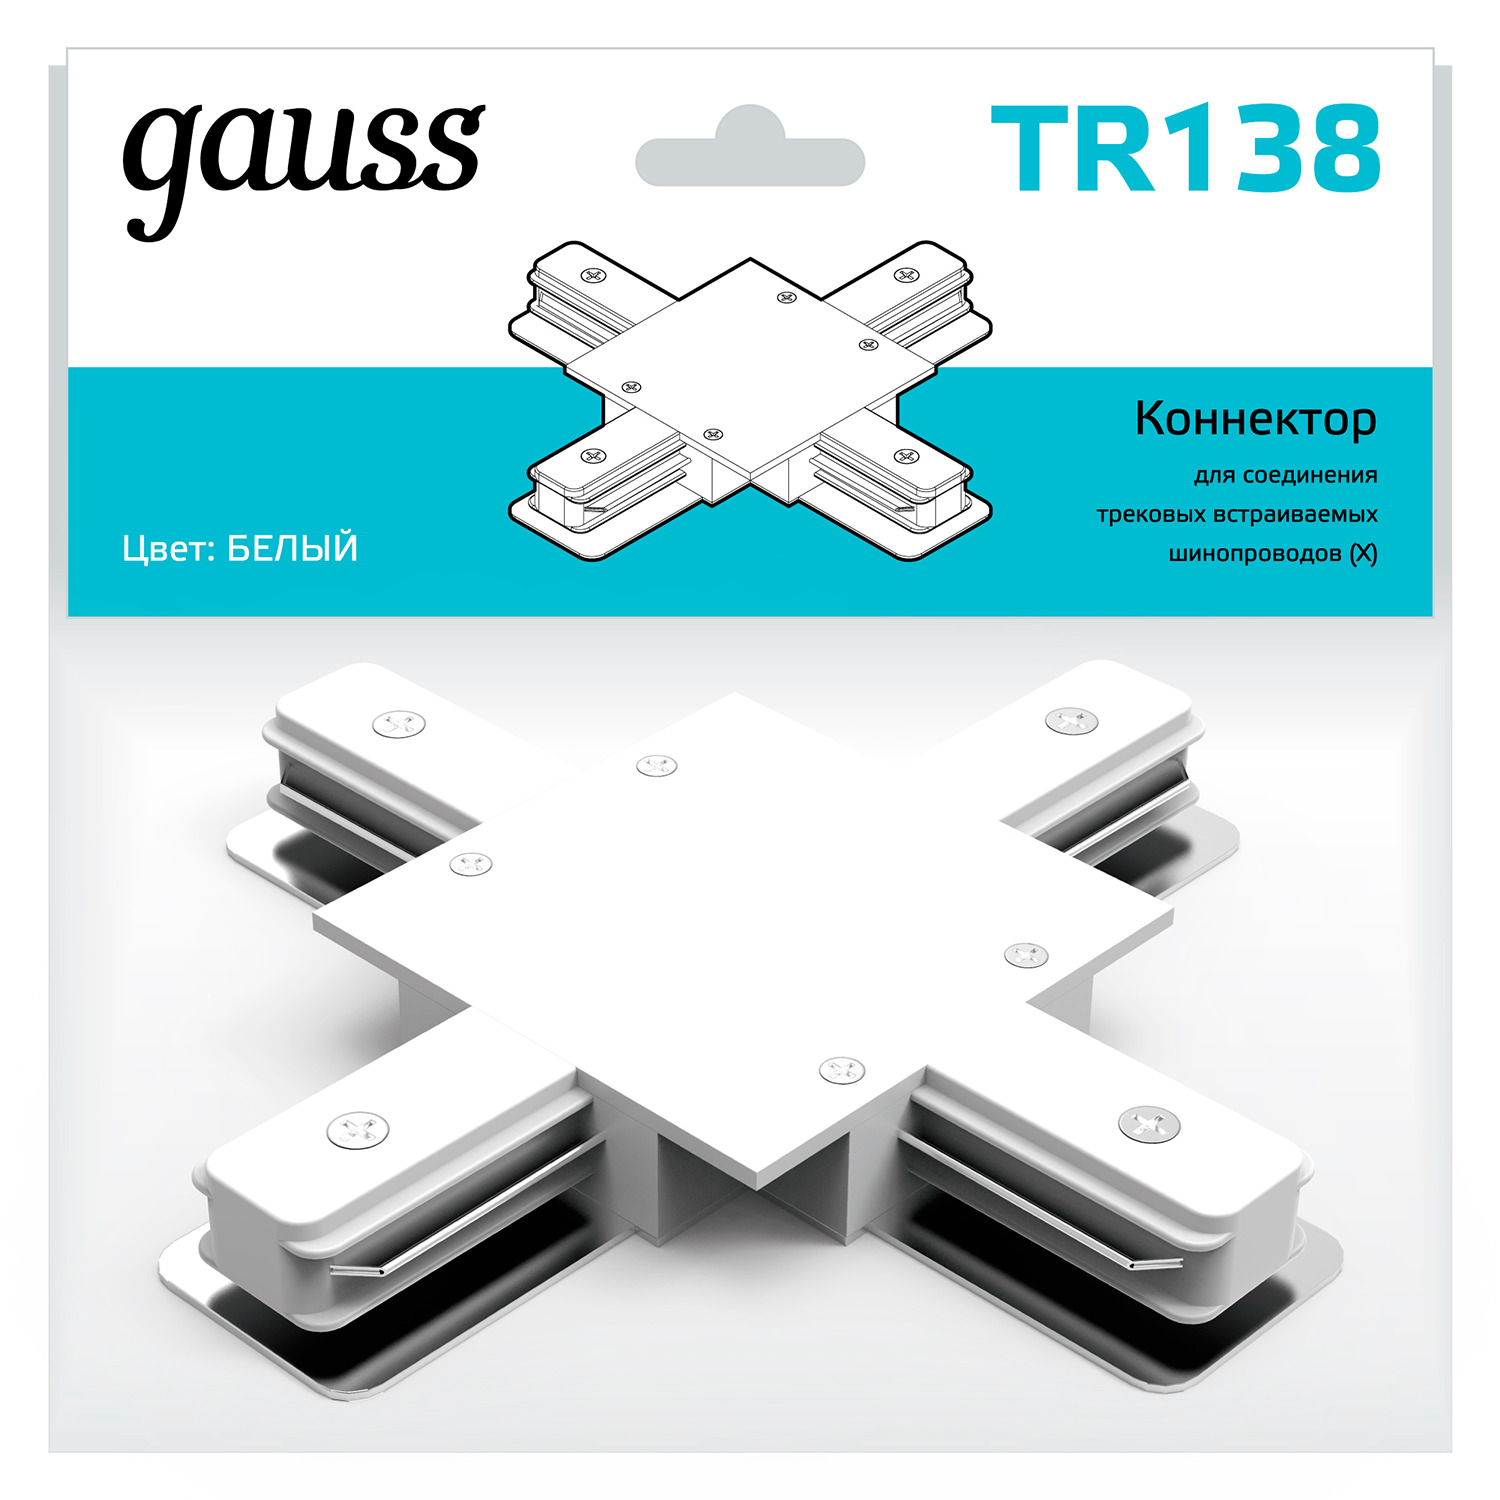 Коннектор Gauss для встраиваемых трековых шинопроводов (+) белый коннектор gauss для встраиваемых трековых шинопроводов